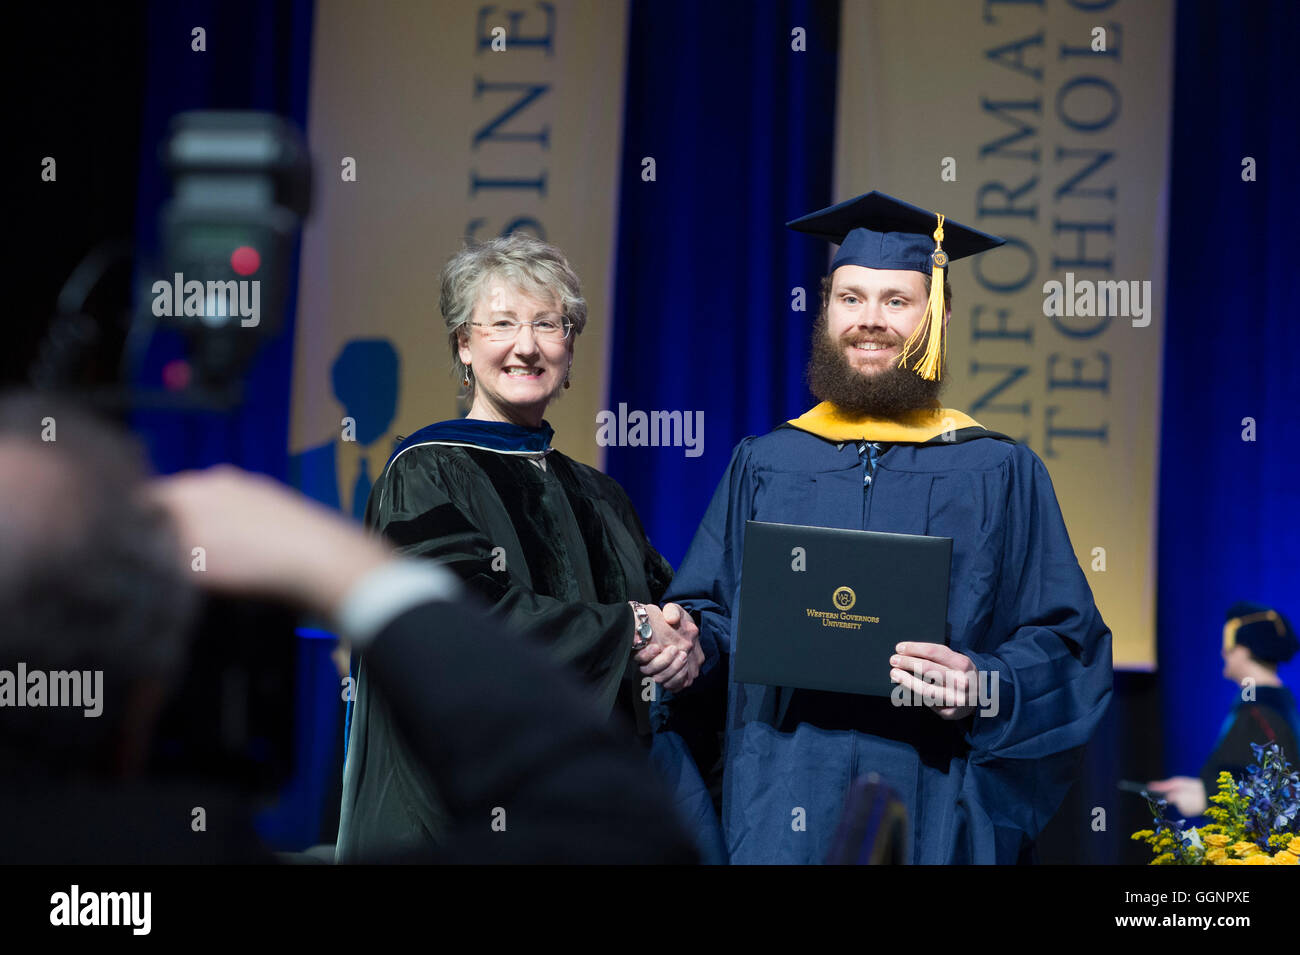 Graduierung Kandidat in Mütze und Mantel erhält Diplom an Western Governors University Abschlussfeier in Orlando, FL Stockfoto